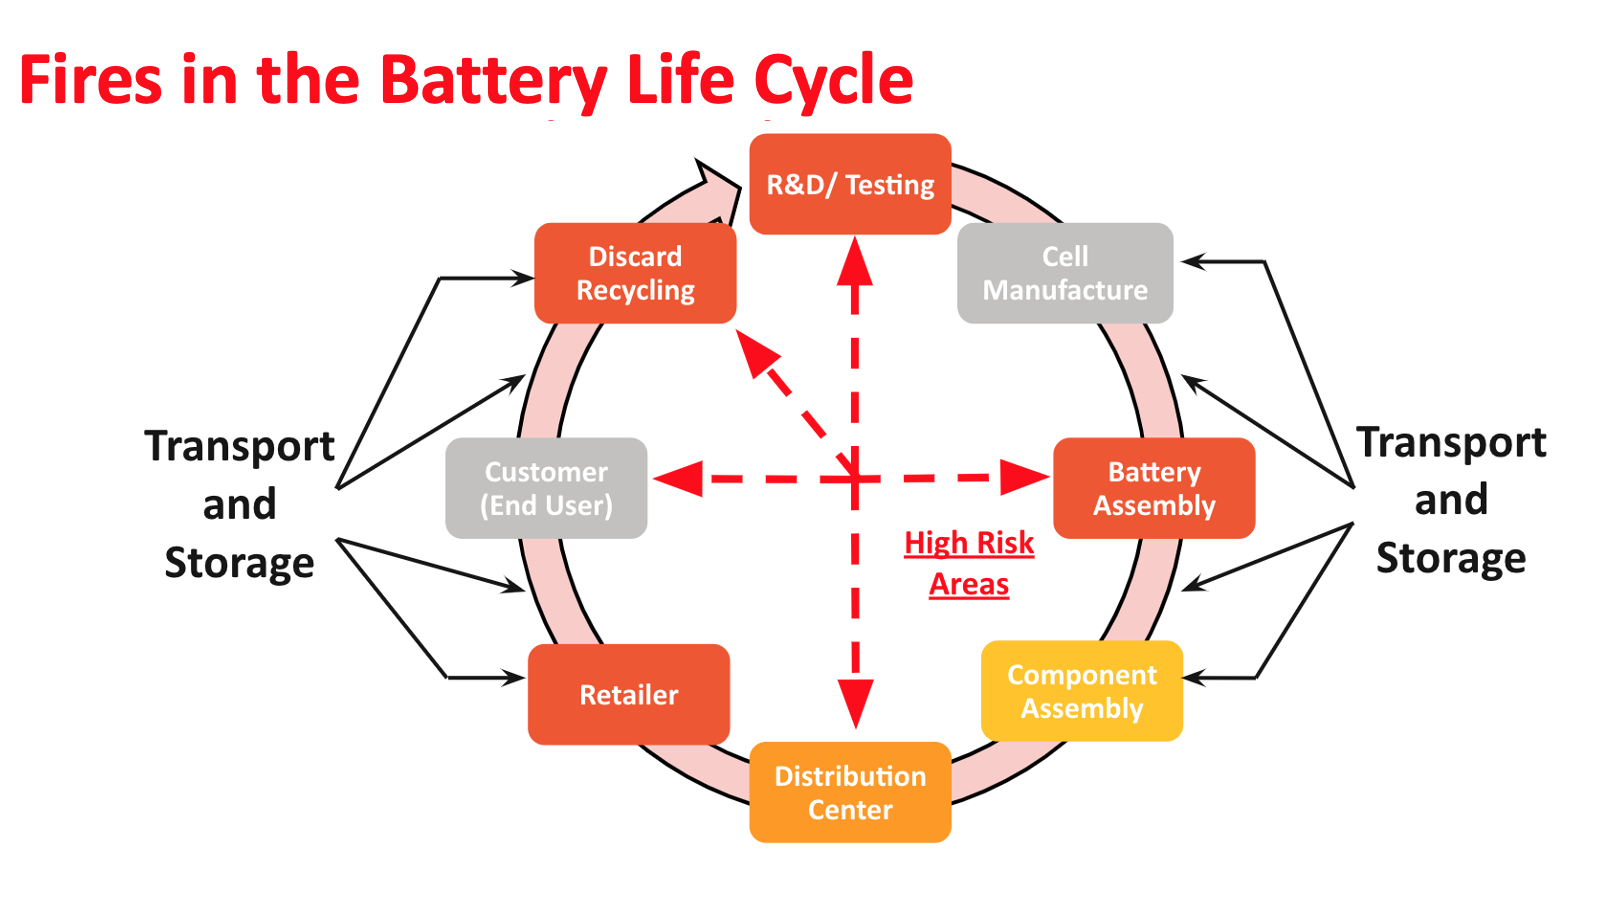  Cómo las baterías de iones de litio pueden representar un riesgo de incendio, regulaciones más estrictas para garantizar el uso y eliminación seguros de las baterías de iones de litio